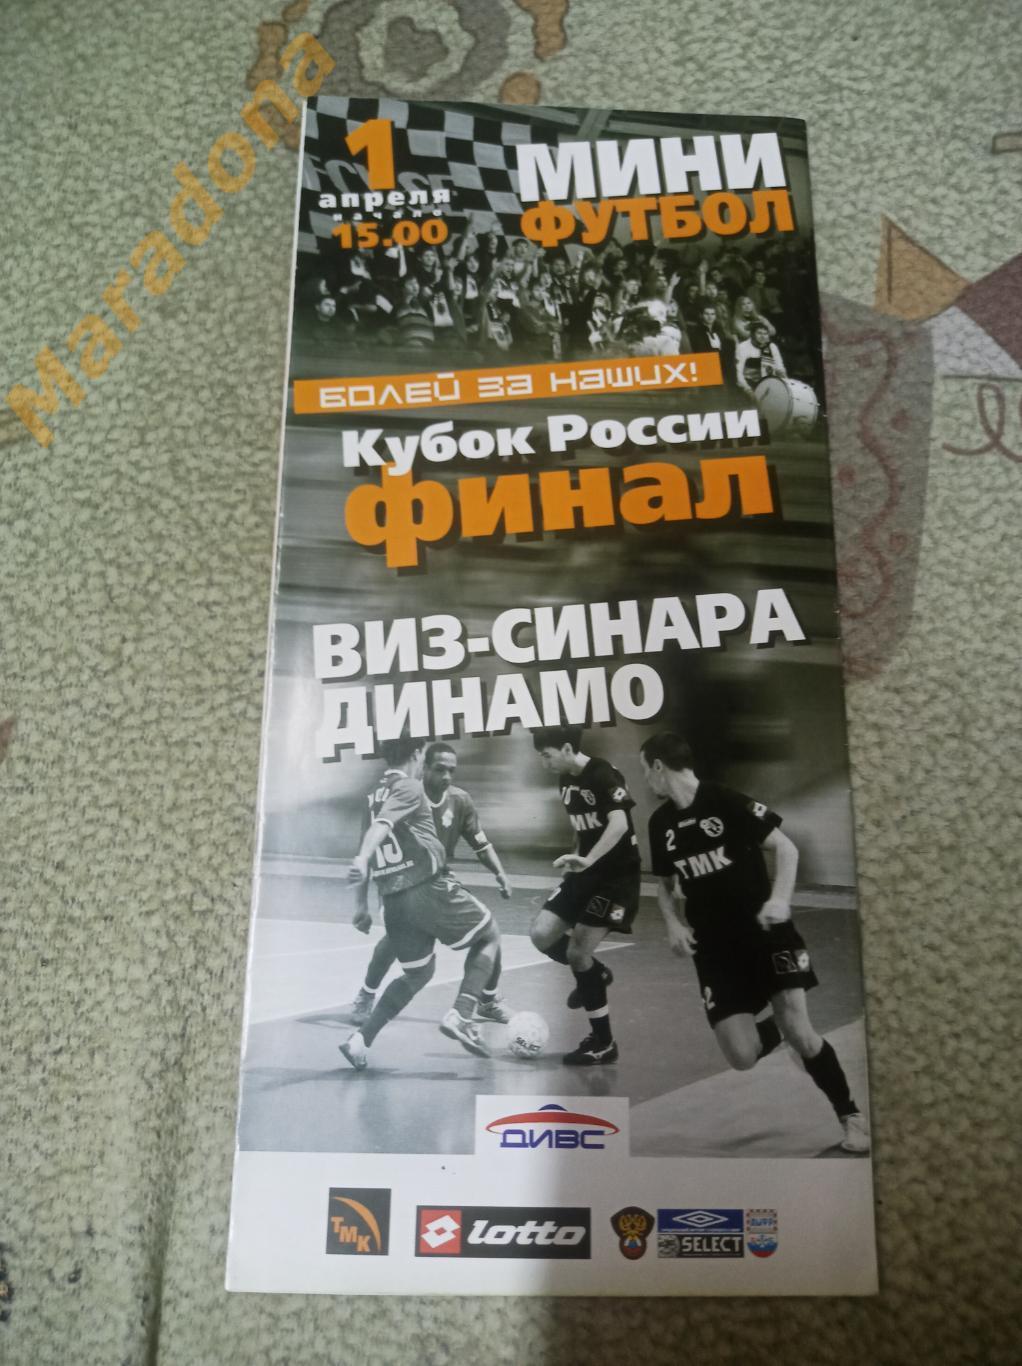 ВИЗ-Синара - Динамо Москва 2006/2007 Кубок